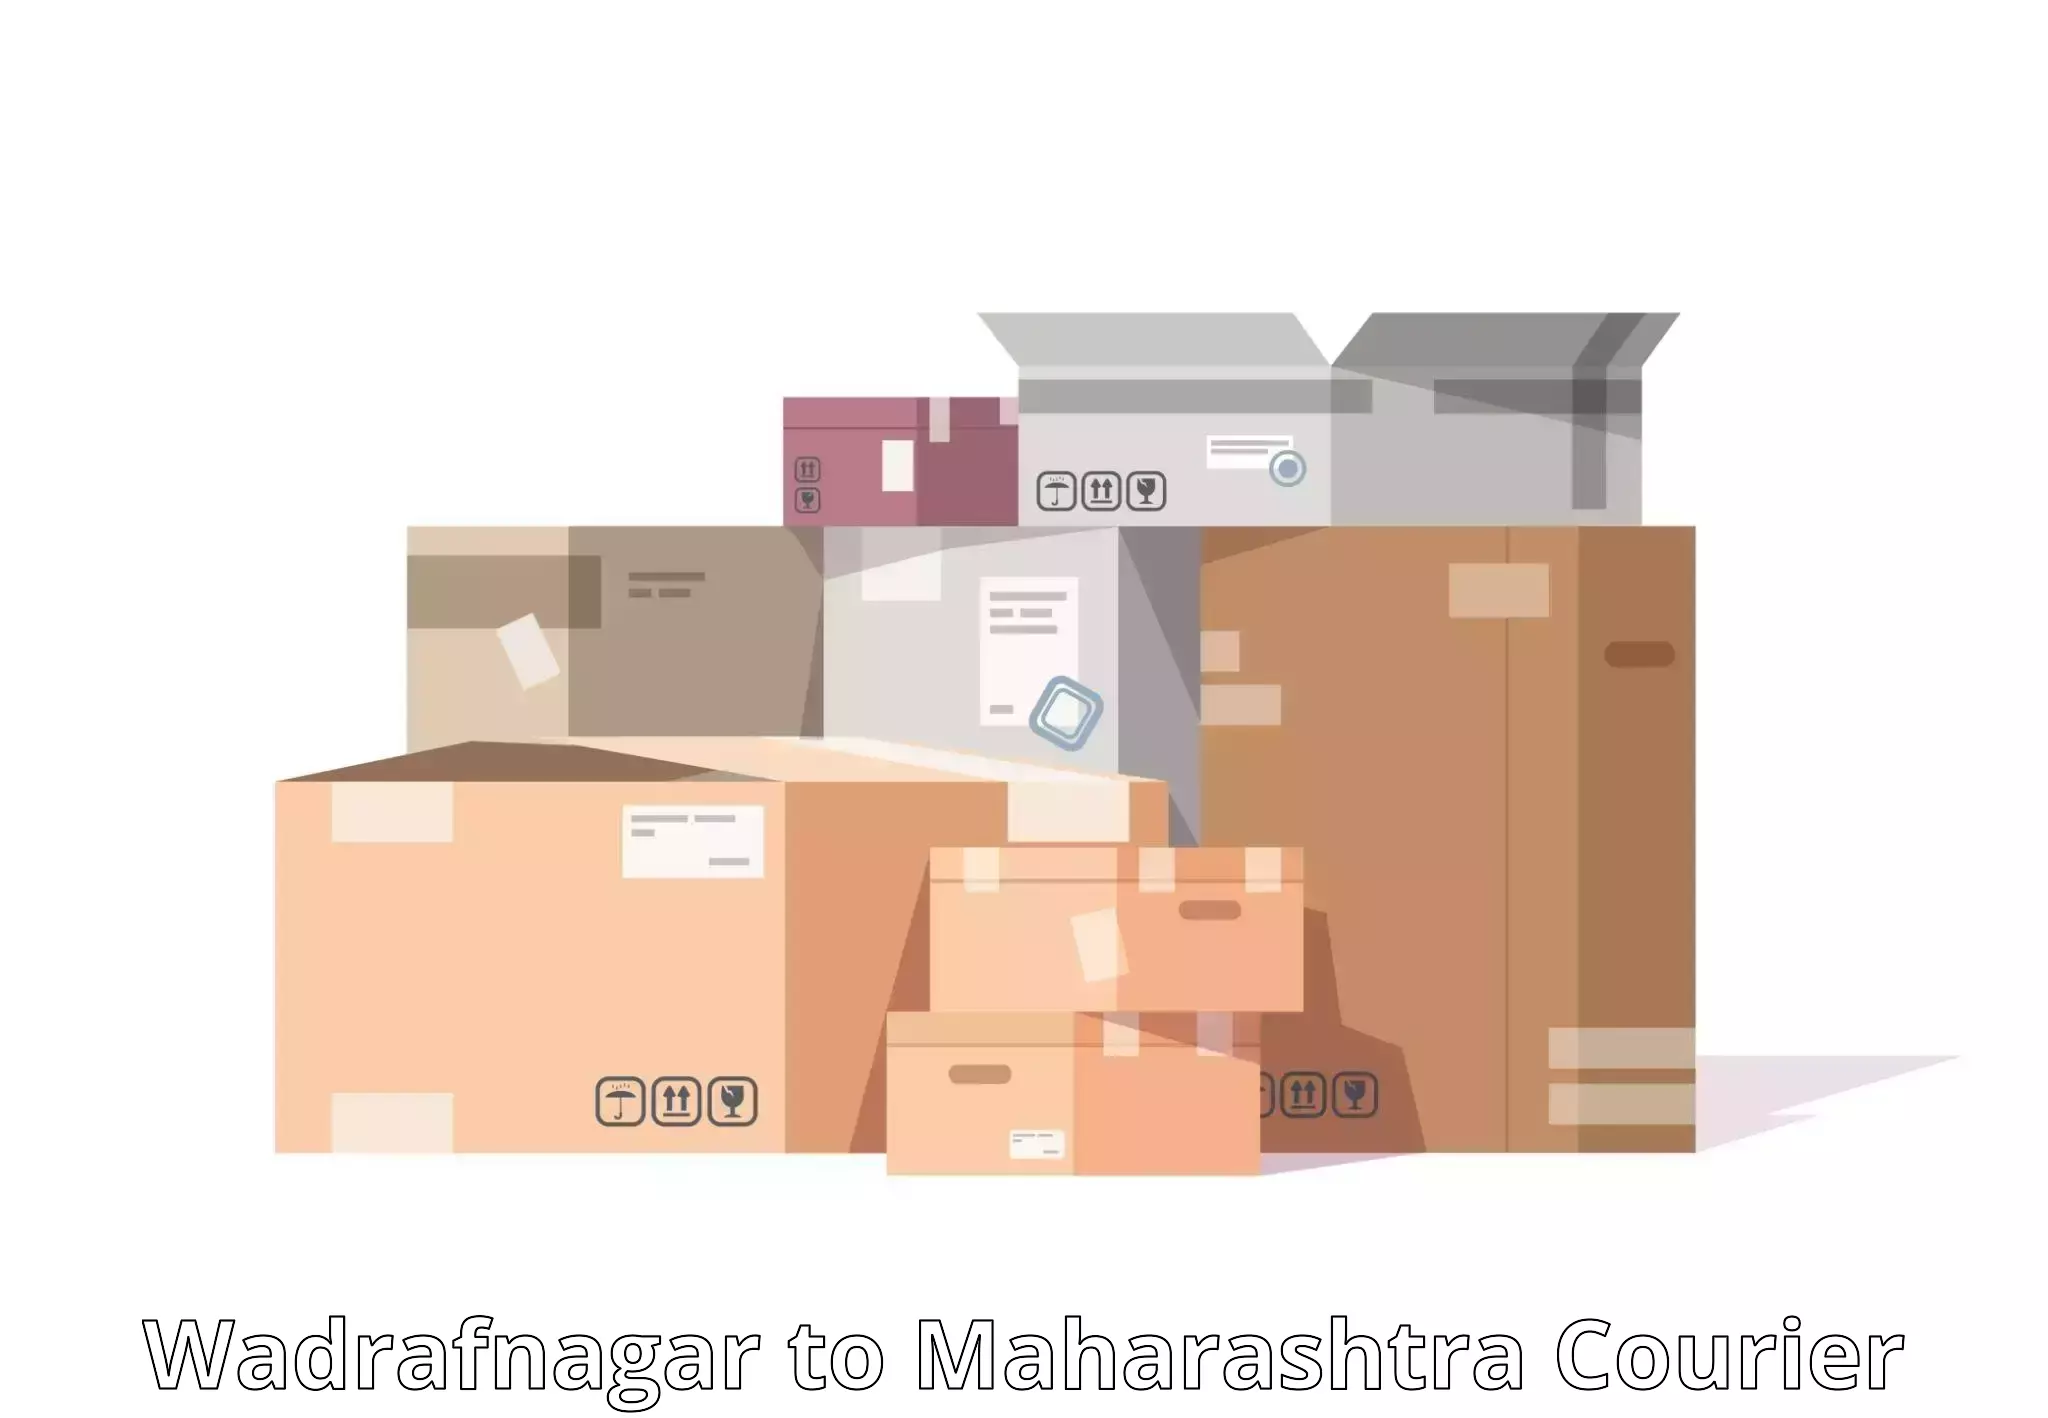 Special handling courier Wadrafnagar to Tuljapur